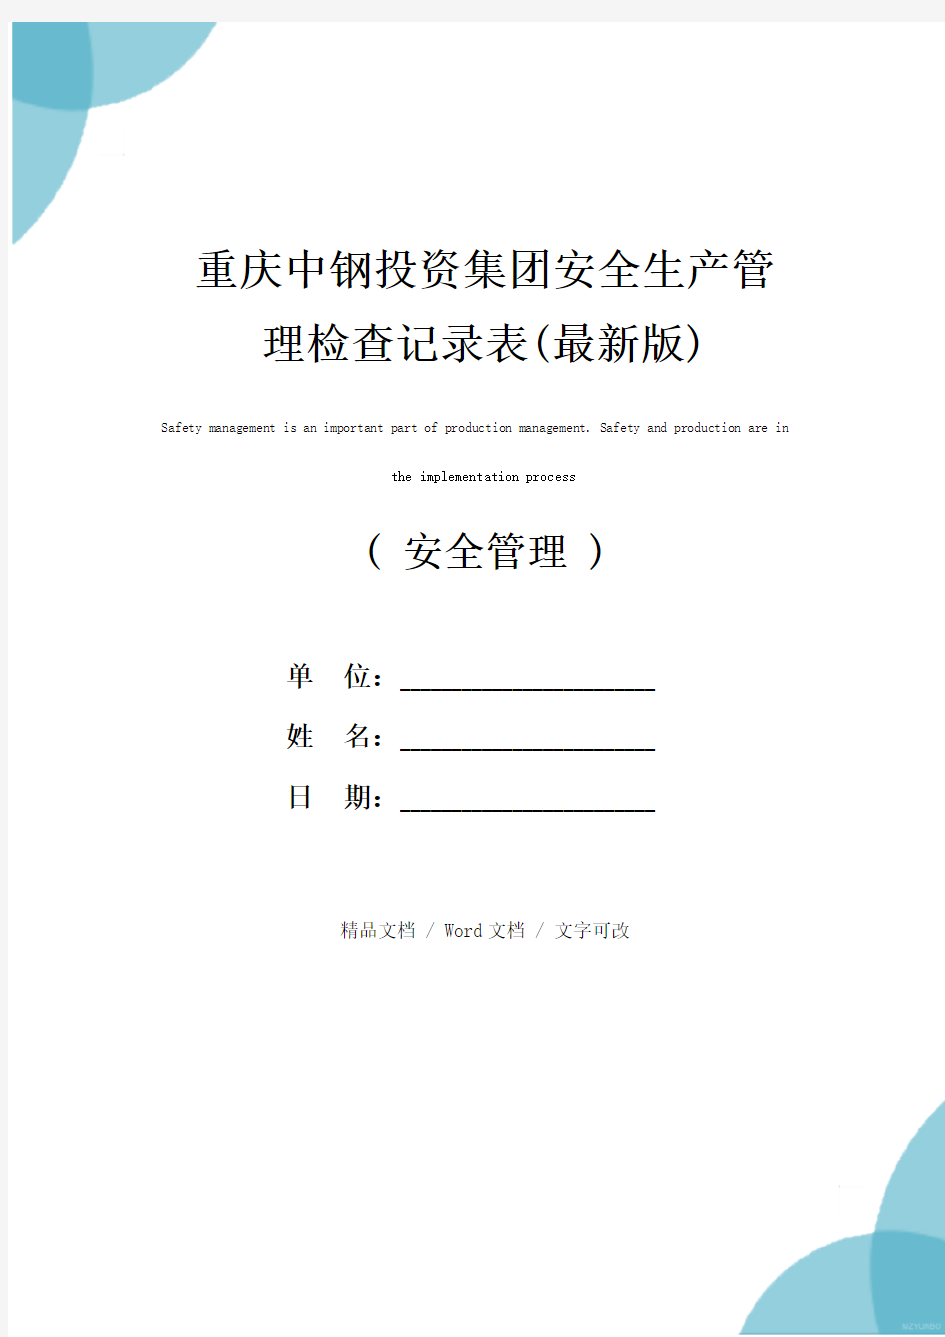 重庆中钢投资集团安全生产管理检查记录表(最新版)